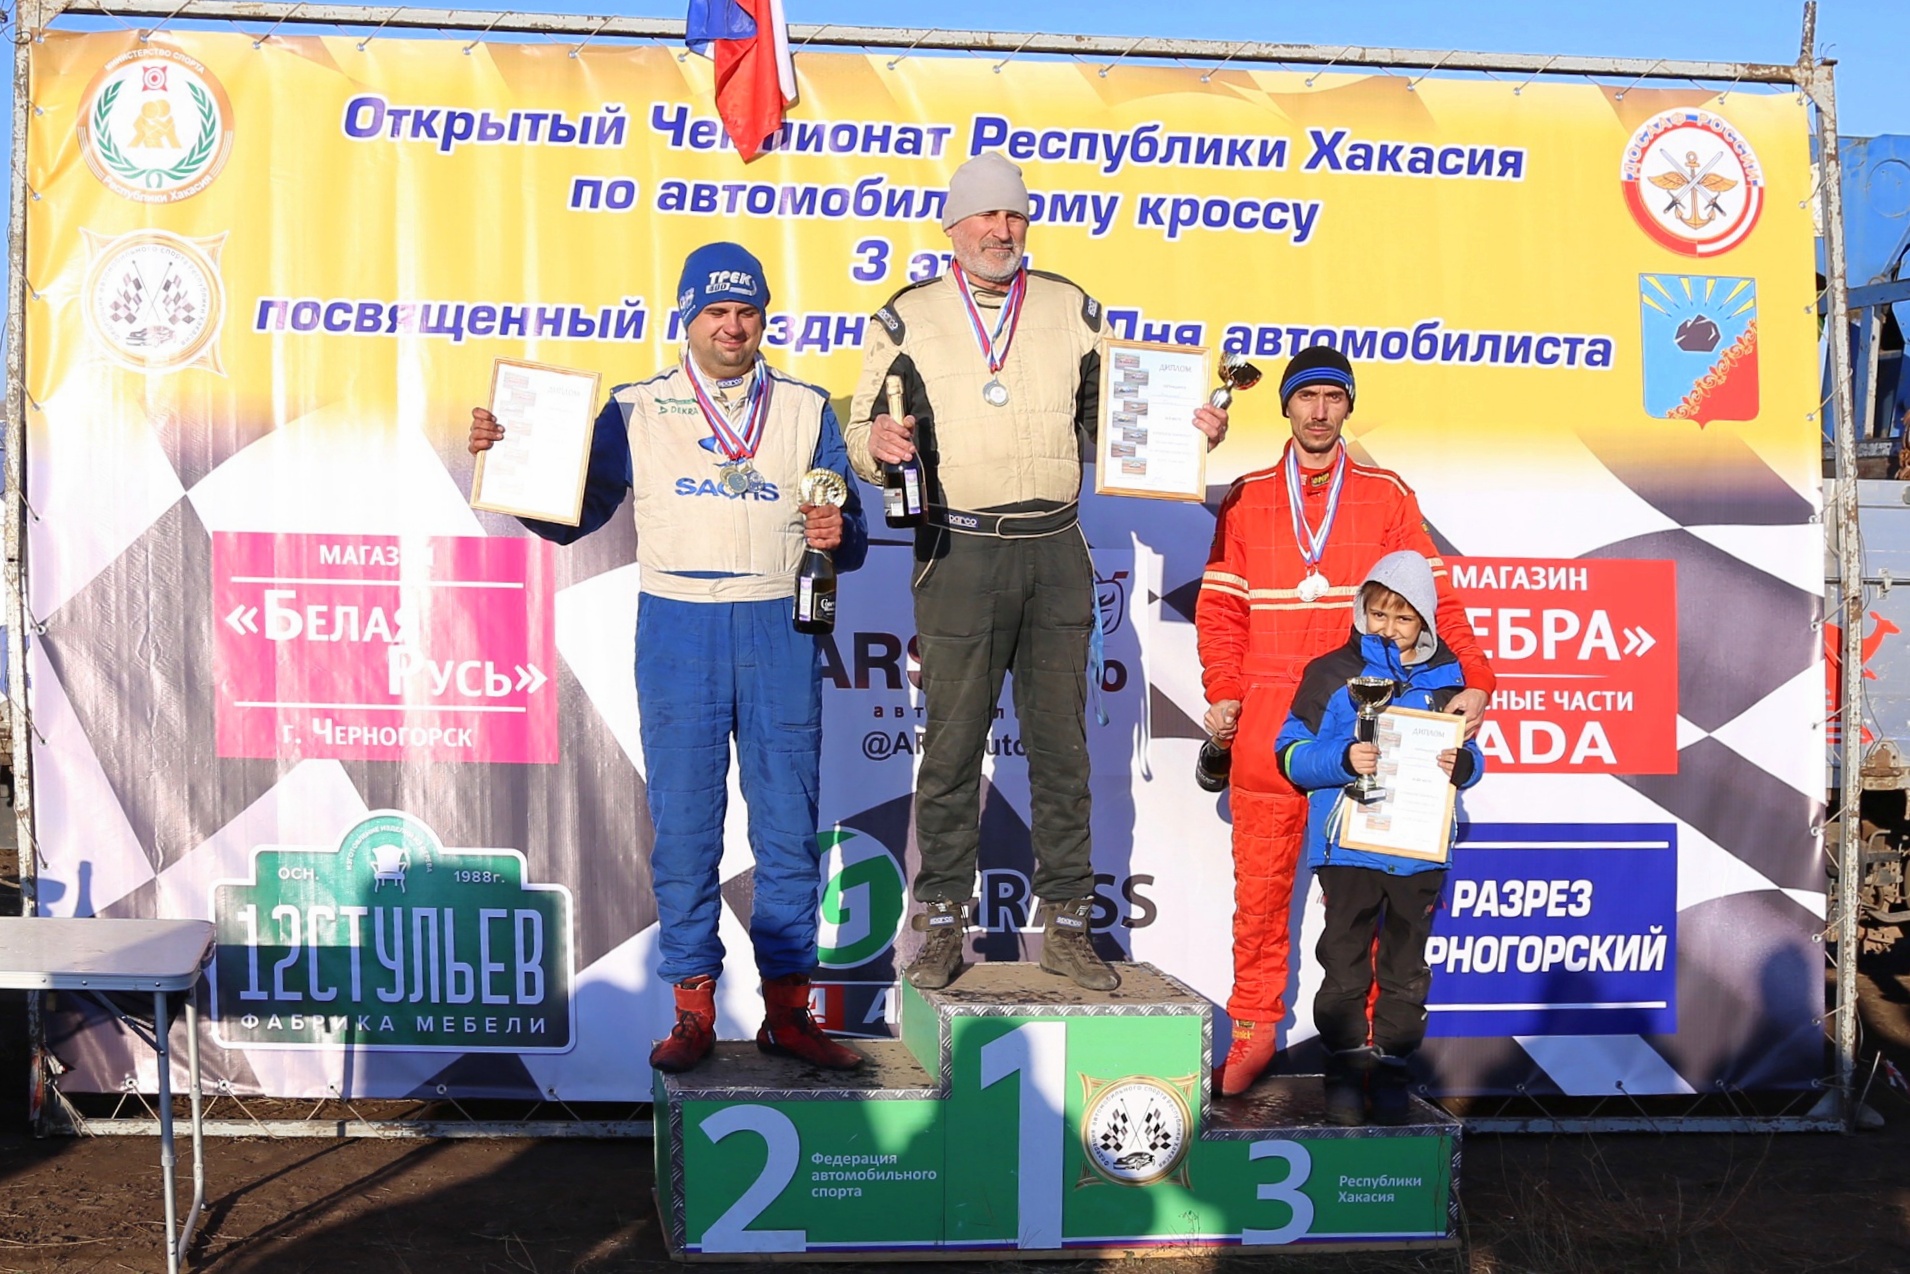 Работник «Топкинского цемента» стал лидером чемпионата республики Хакасия по автокроссу